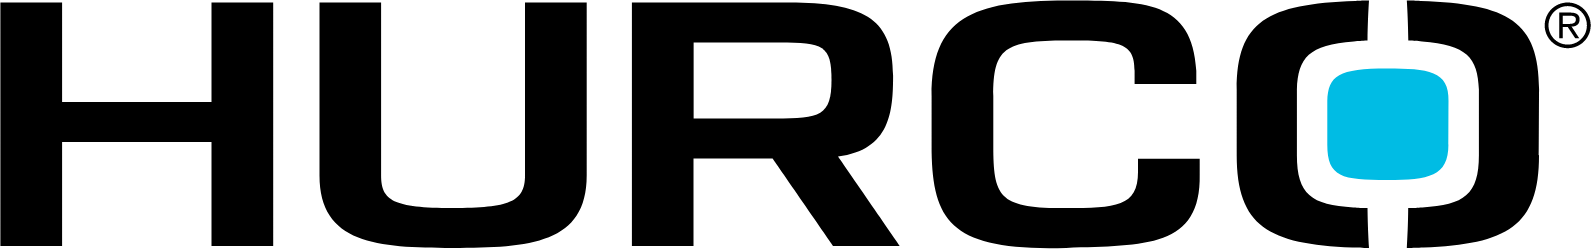 Hurco Companies logo large (transparent PNG)